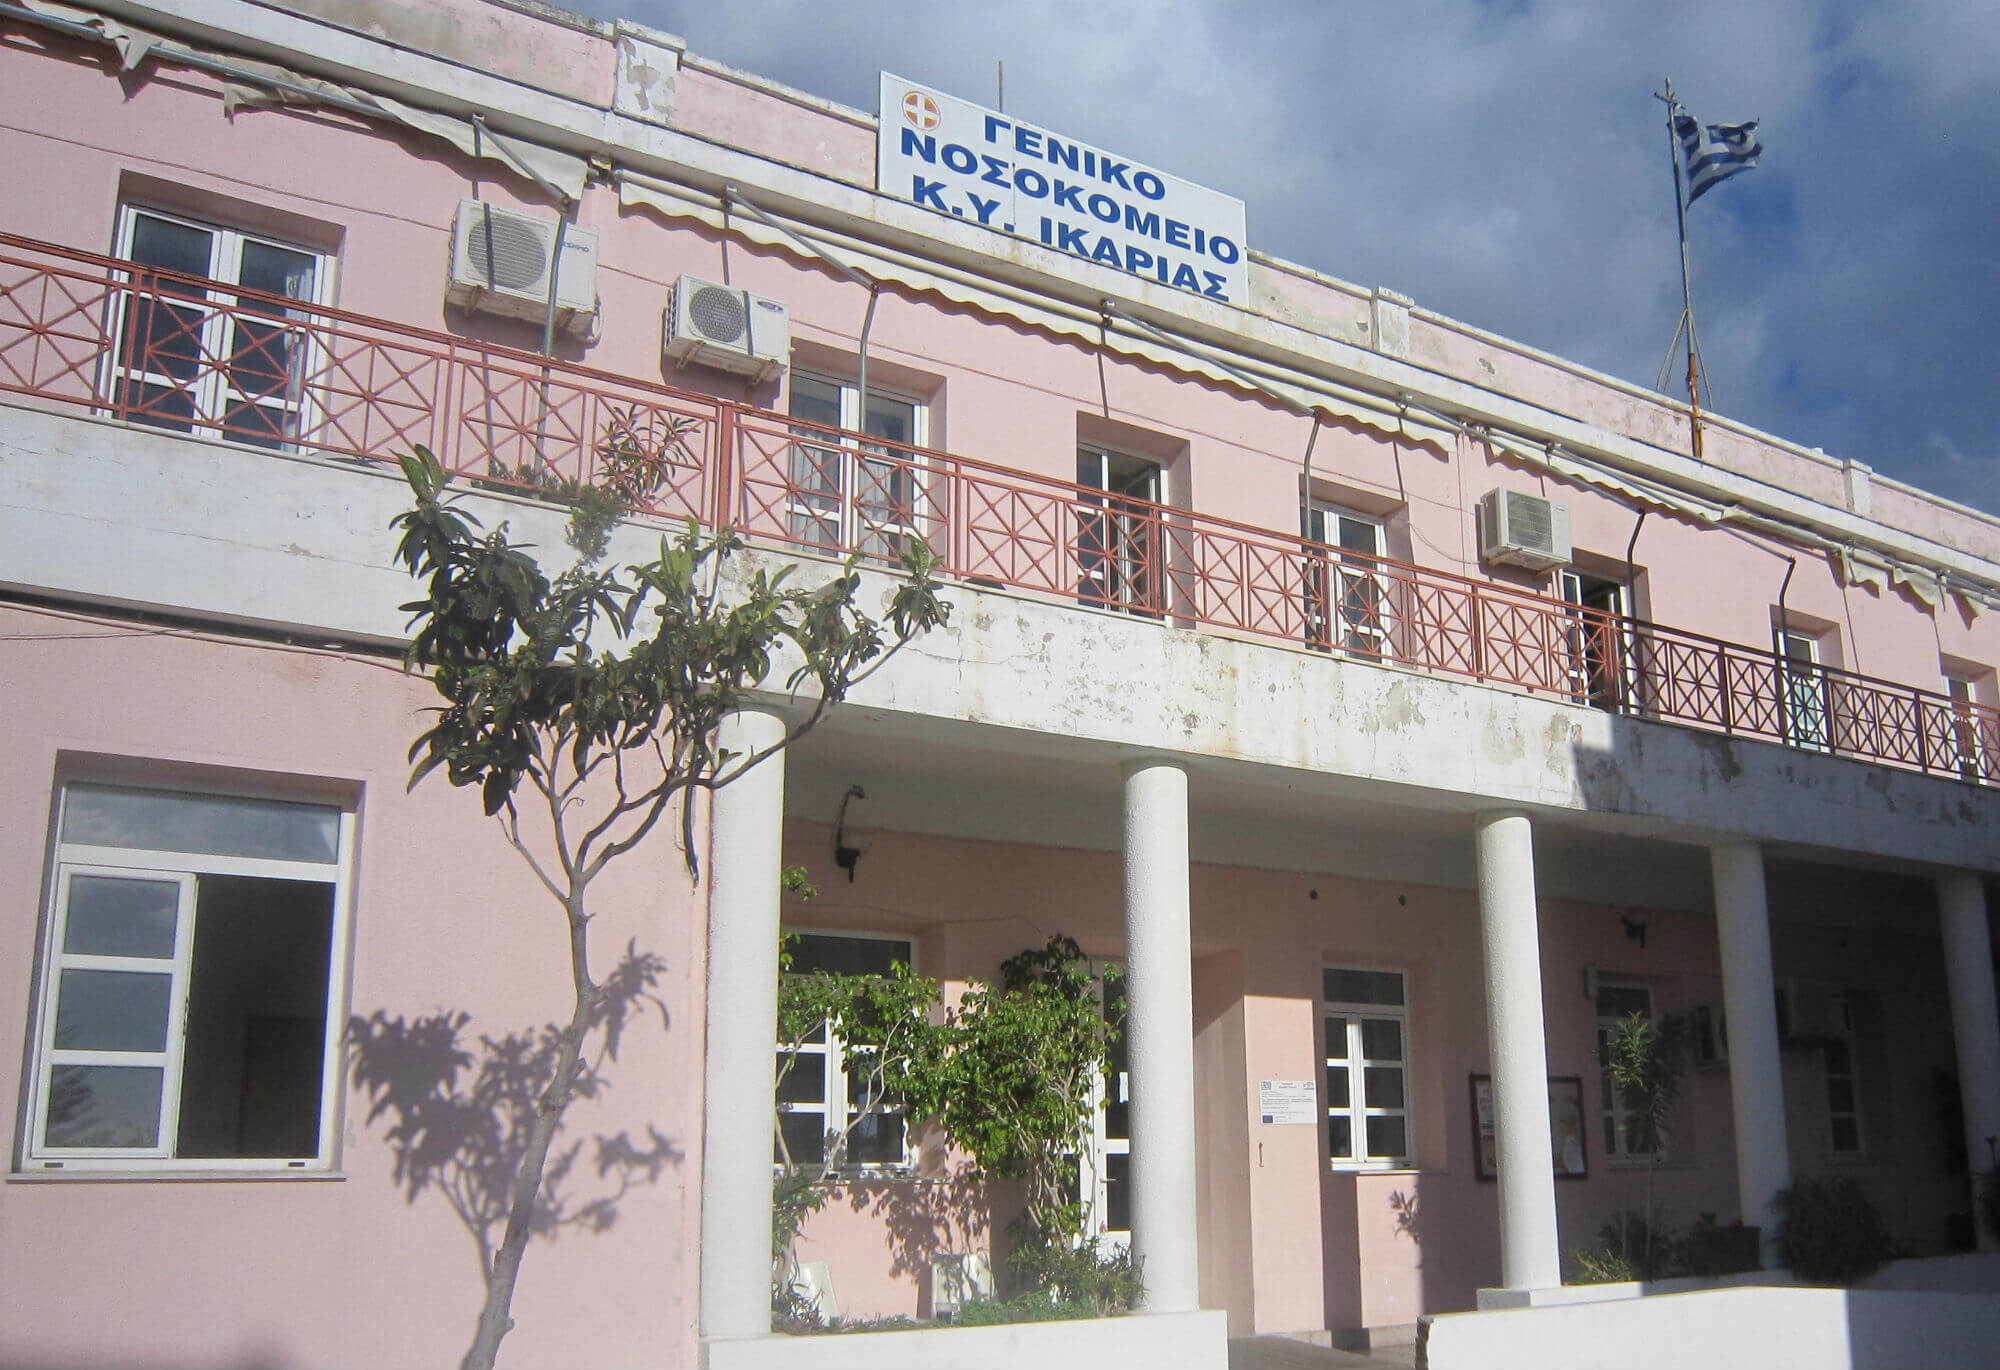 Χωρίς παιδίατρο έμεινε το Νοσοκομείο Ικαρίας – Διαμαρτύρονται οι γονείς του νησιού